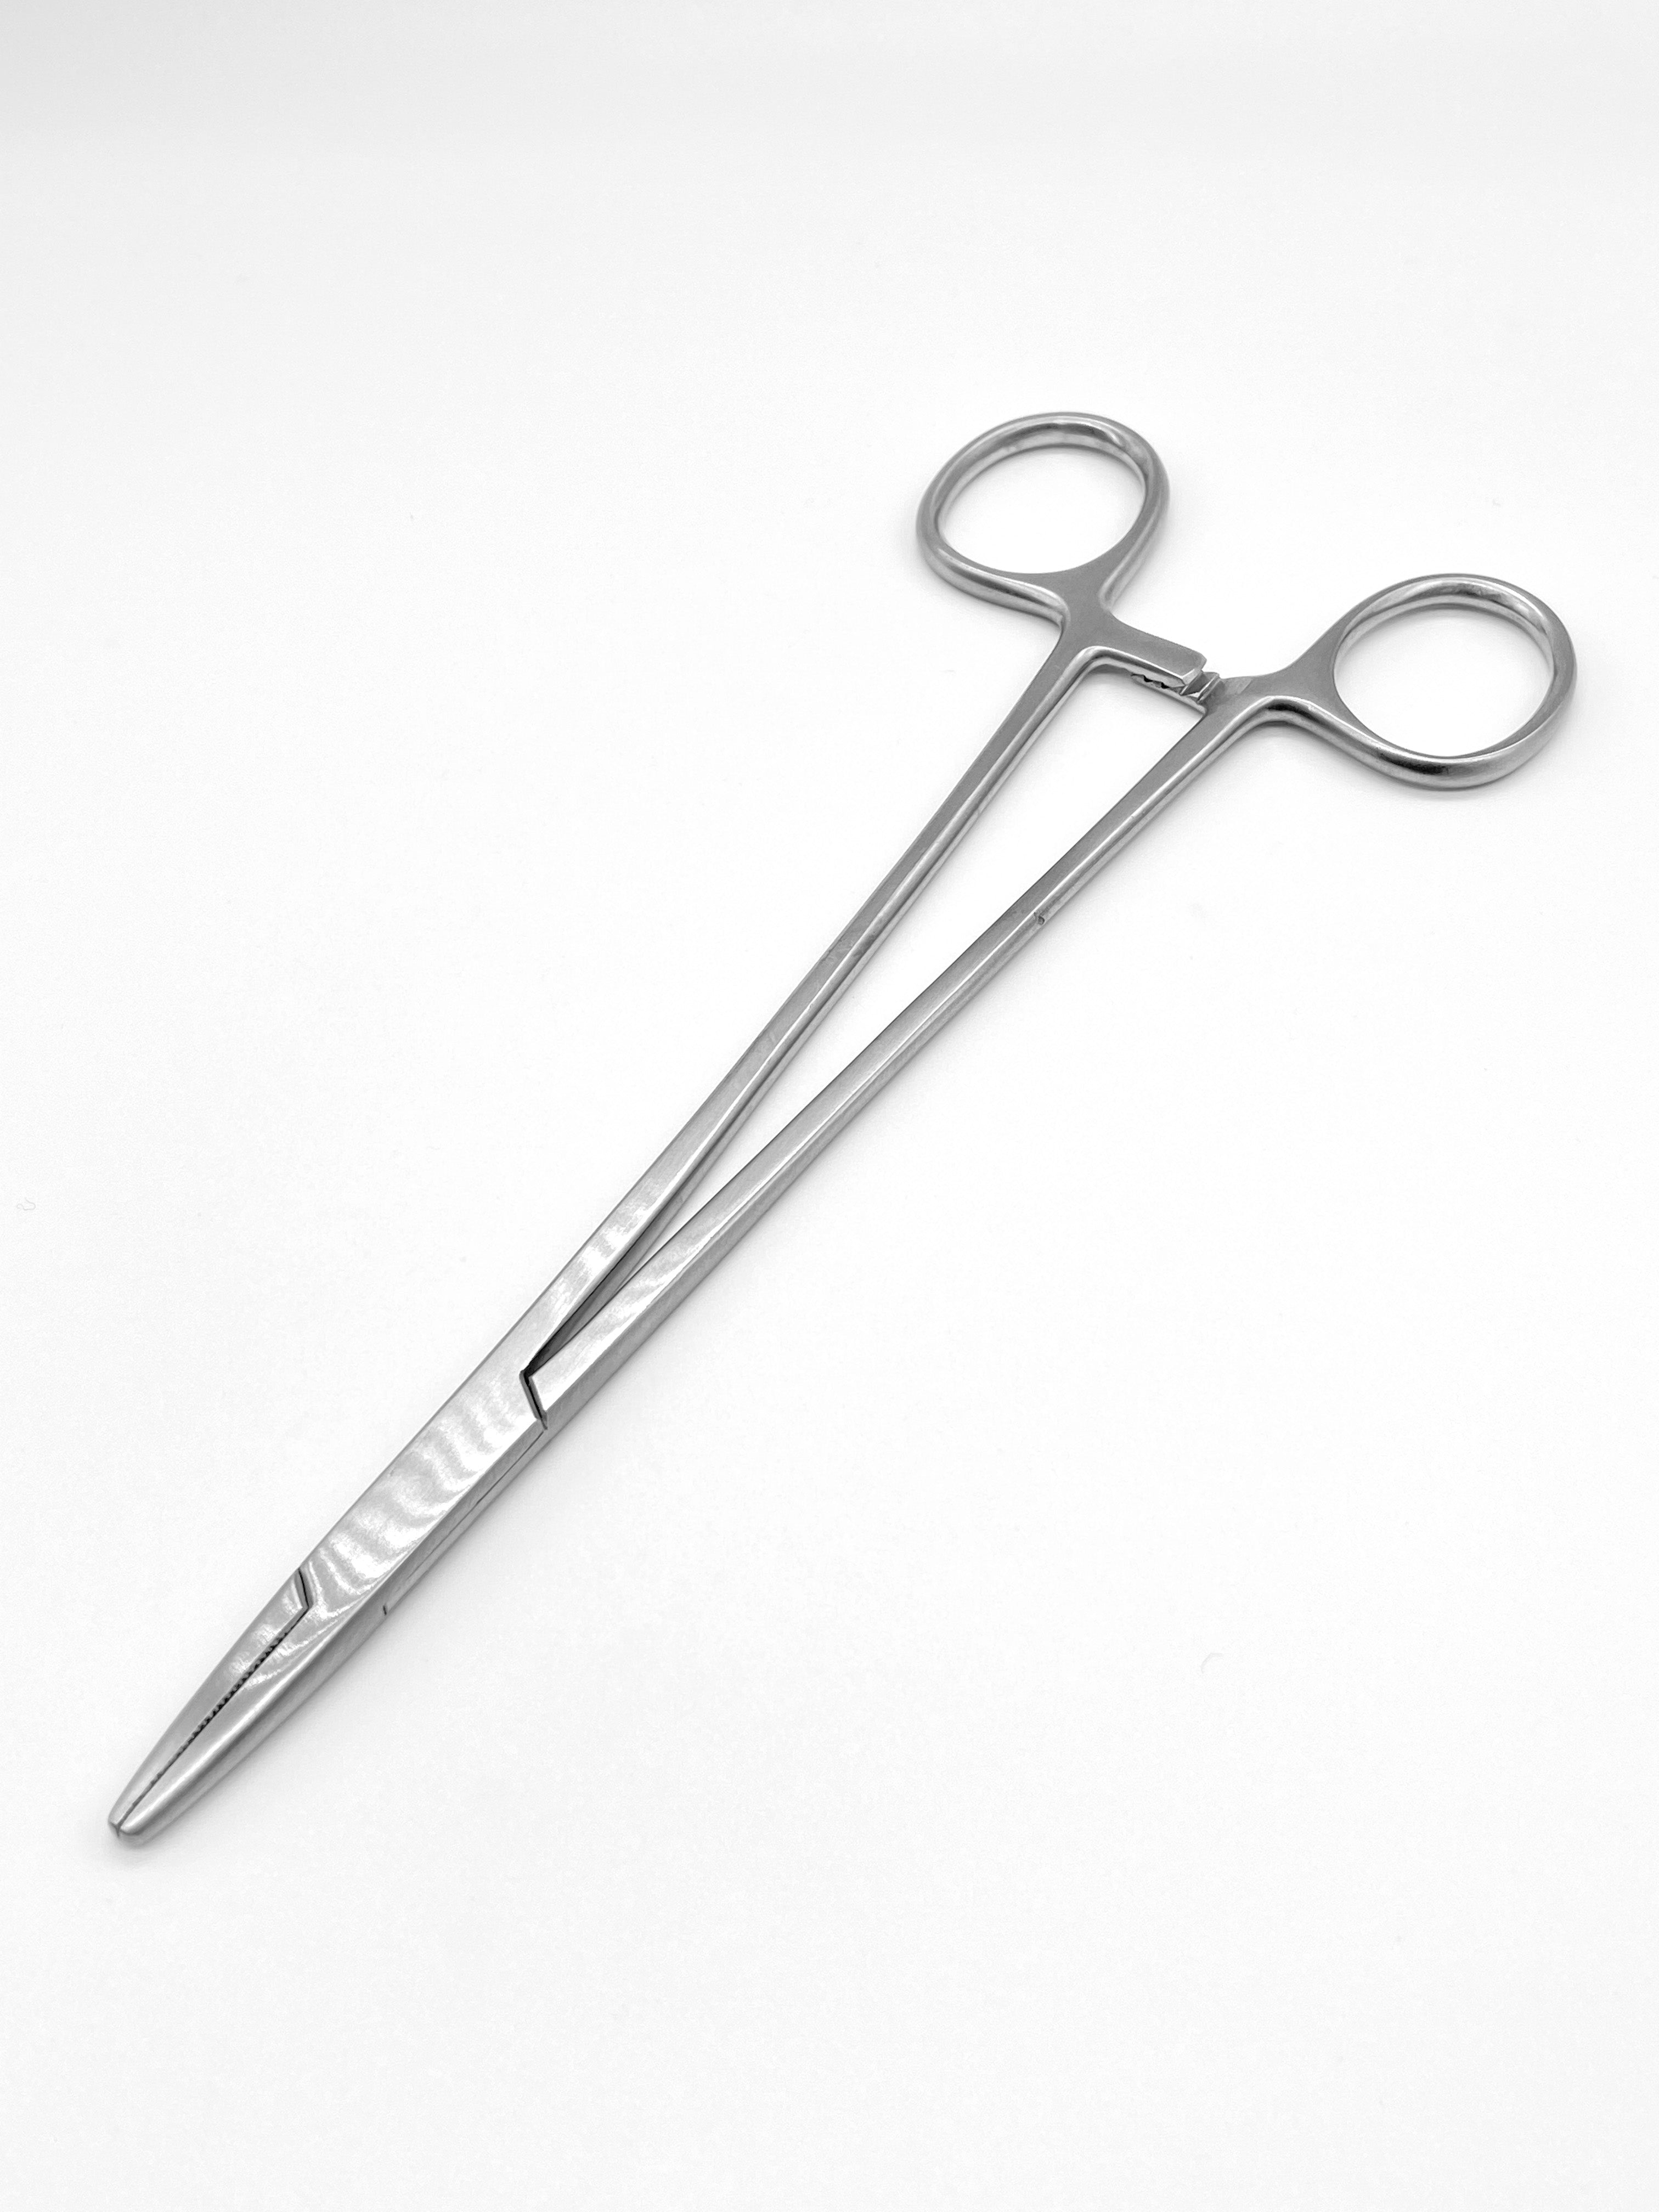 Needle Holders - Mayo Hegar Needle Holder - Surgical Podiatry Instruments